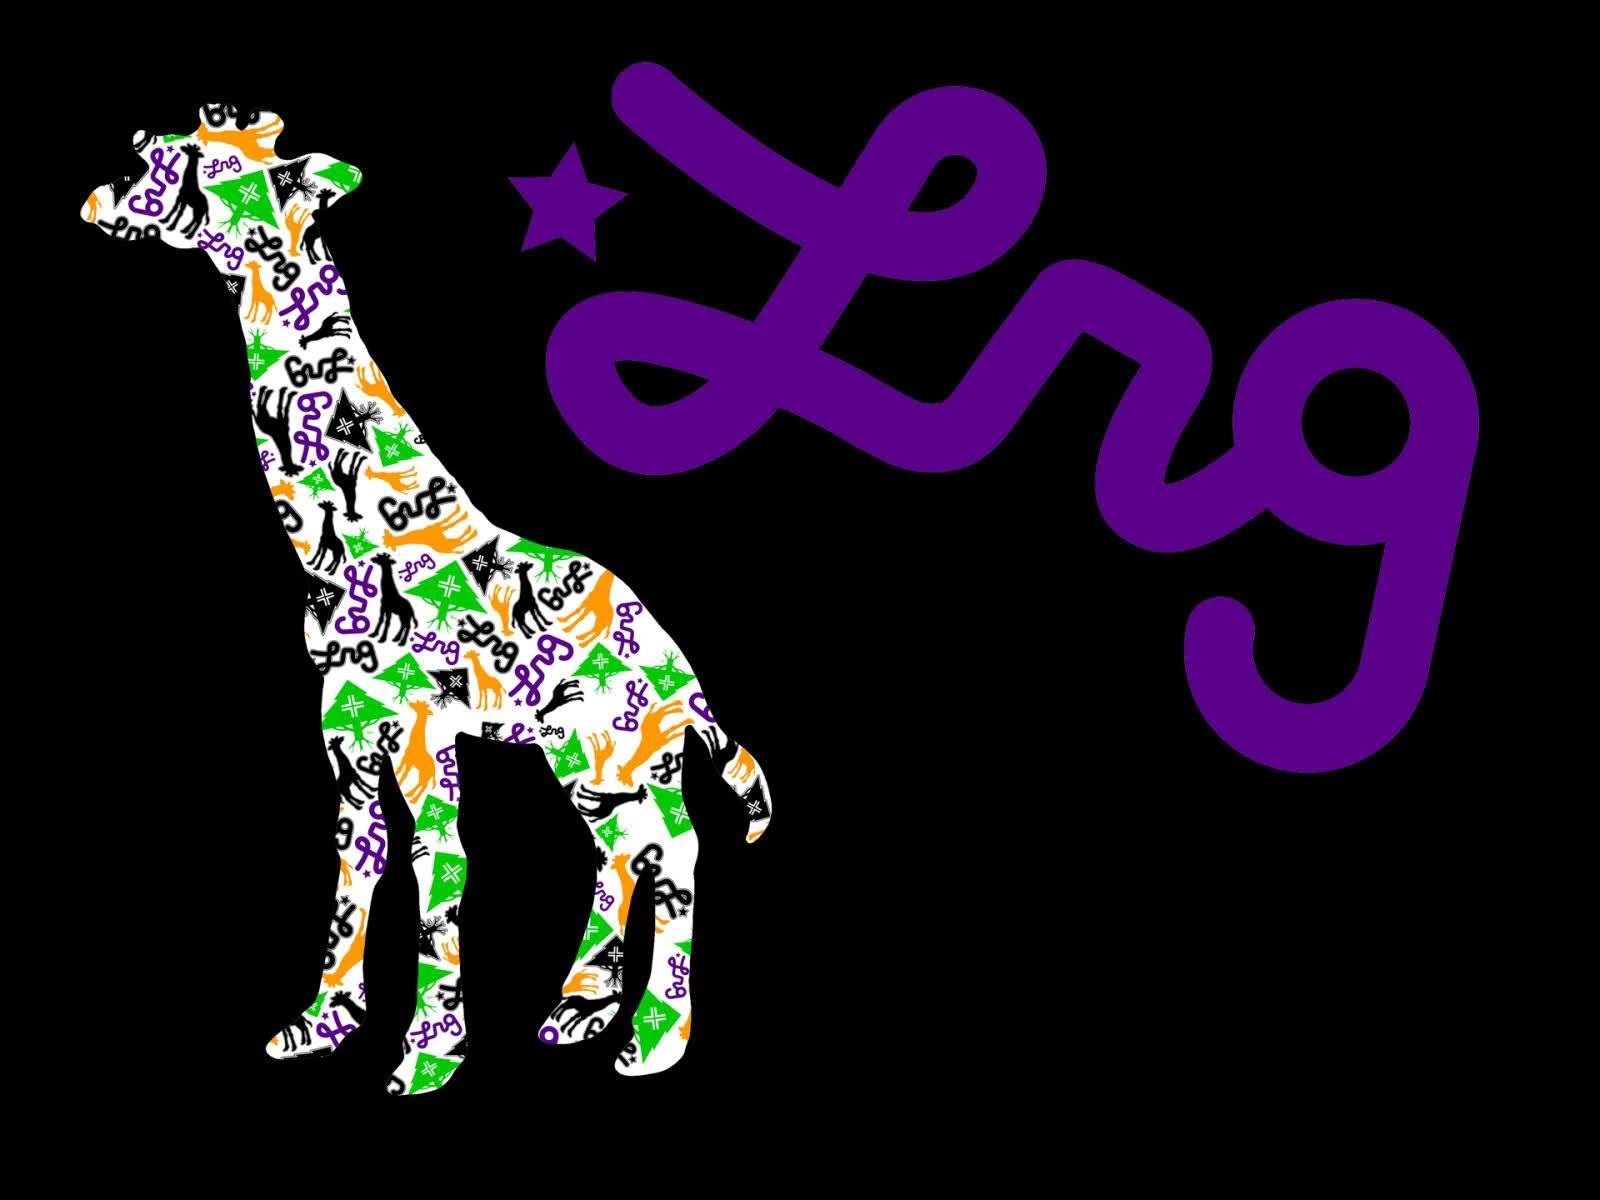 LRG Skate Logo - Best 37+ LRG Backgrounds on HipWallpaper | LRG Wallpaper, LRG ...